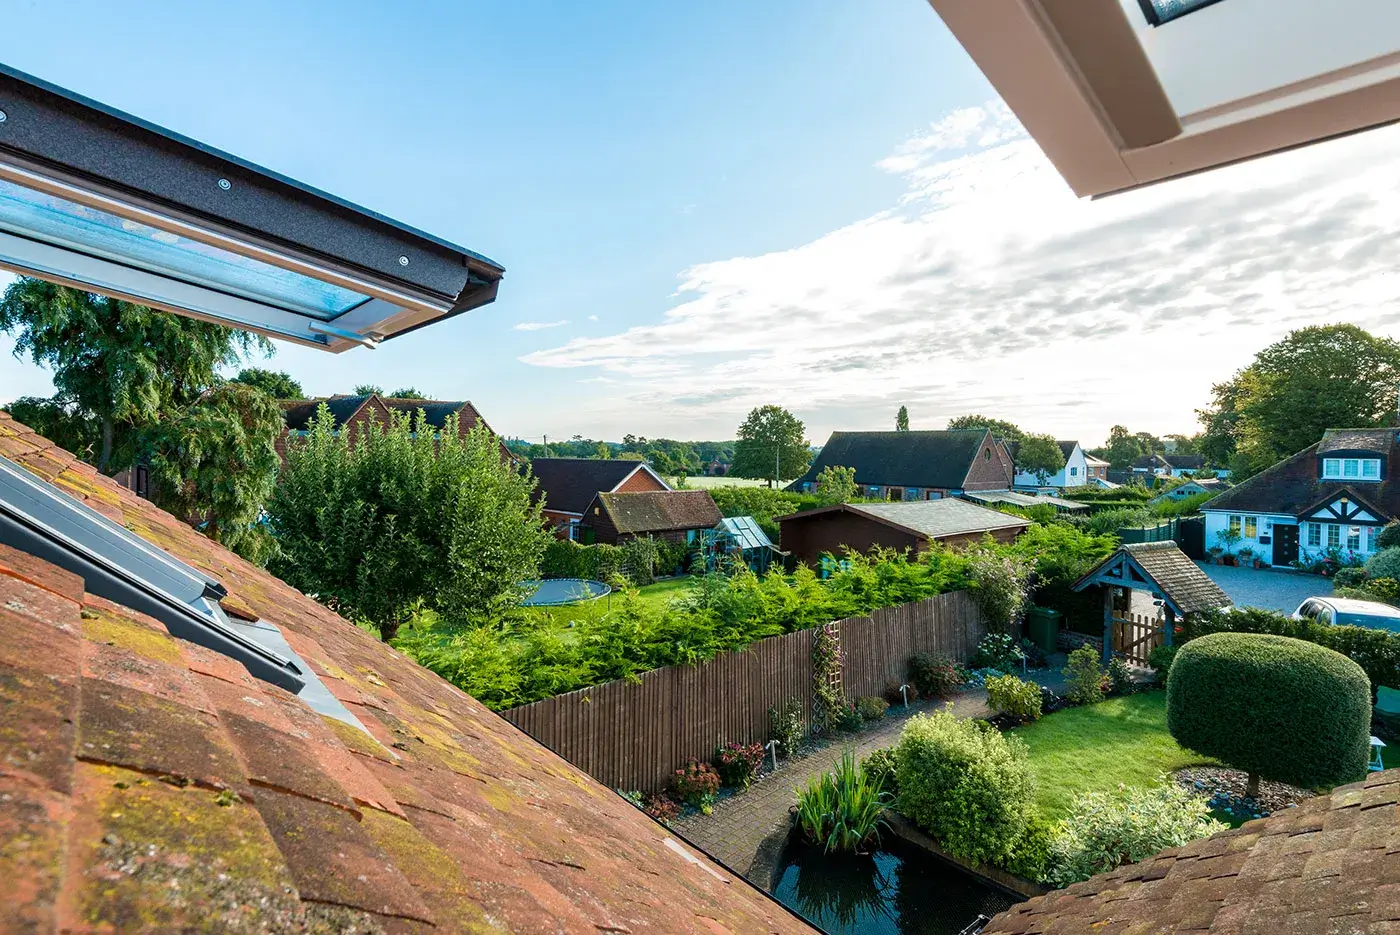 Rooflights open to overlook the garden